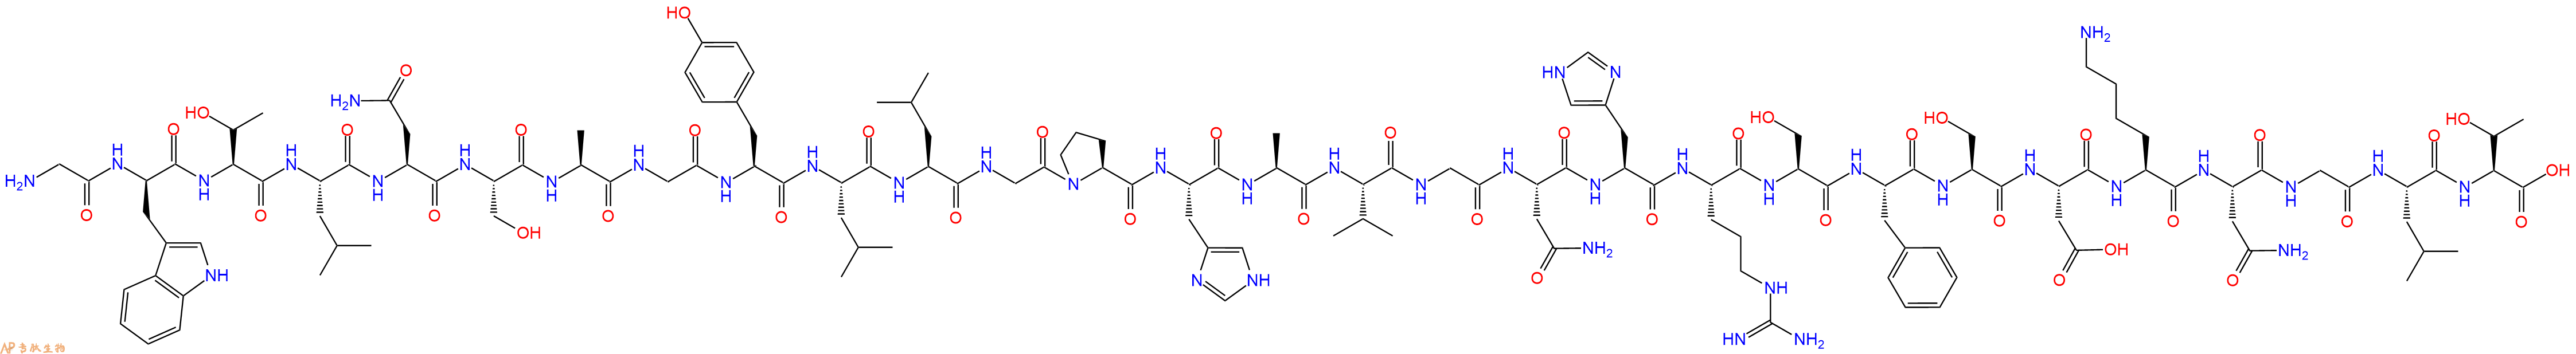 专肽生物产品甘丙肽(DTrp2)-Galanin(1-29)(human)